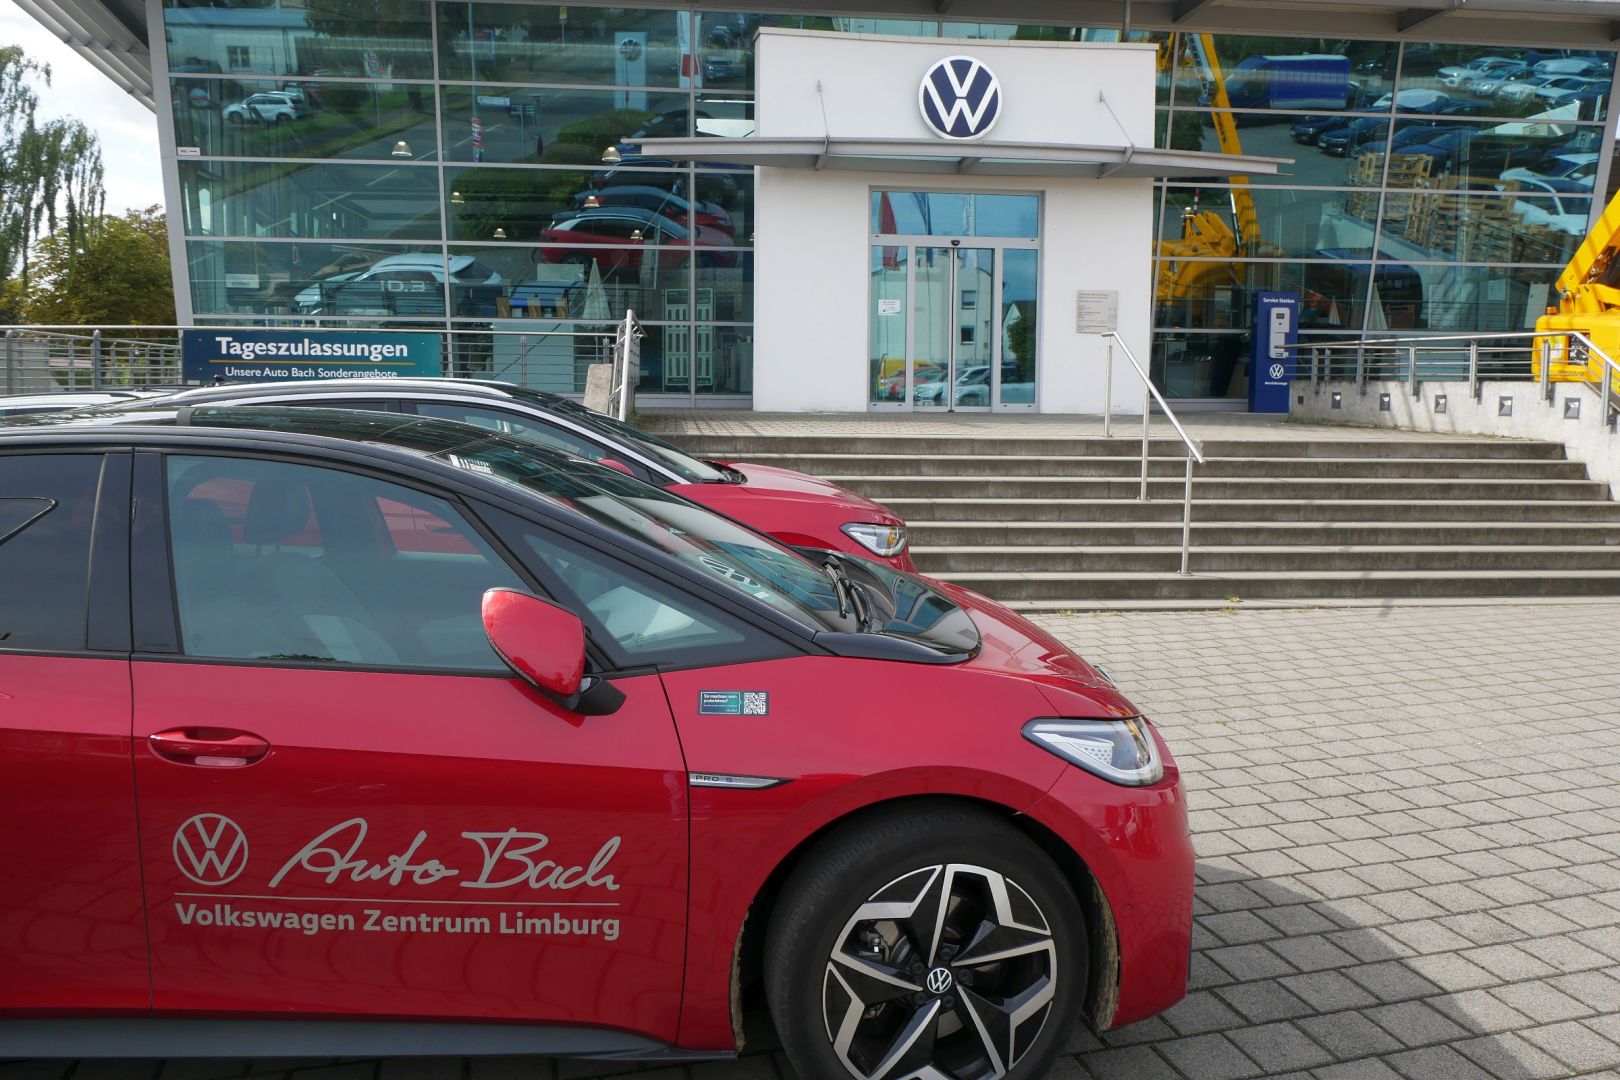 Das VW-Zentrum Limburg von außen. Es stehen zwei rote Autos vor dem Gebäude.